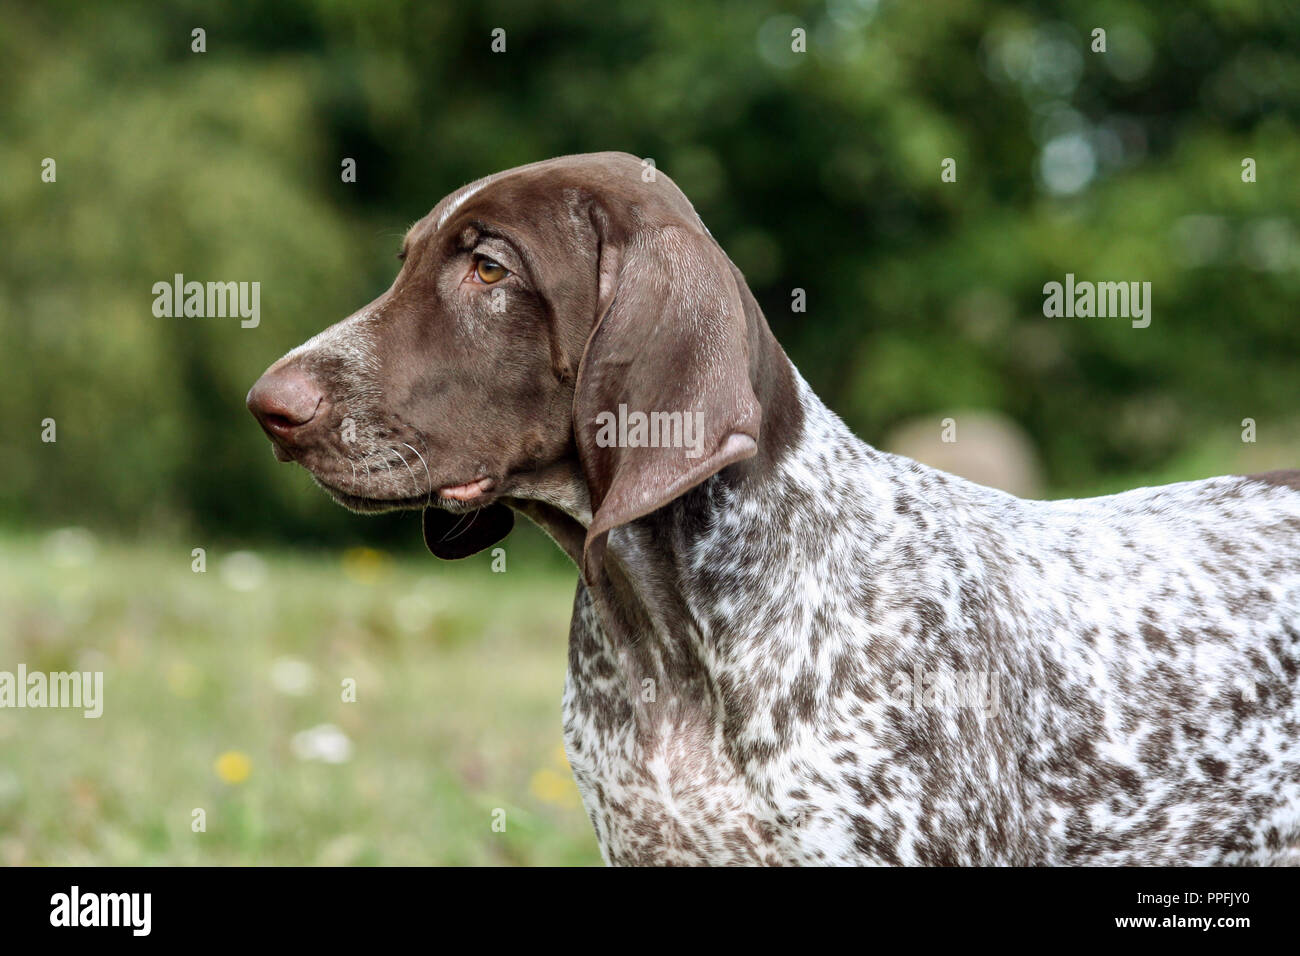 Il tedesco shorthaired puntatore, tedesco kurtshaar uno brown spotted cucciolo, ritratto nel profilo di close-up e di una parte del corpo, il cane sul lato destro Foto Stock